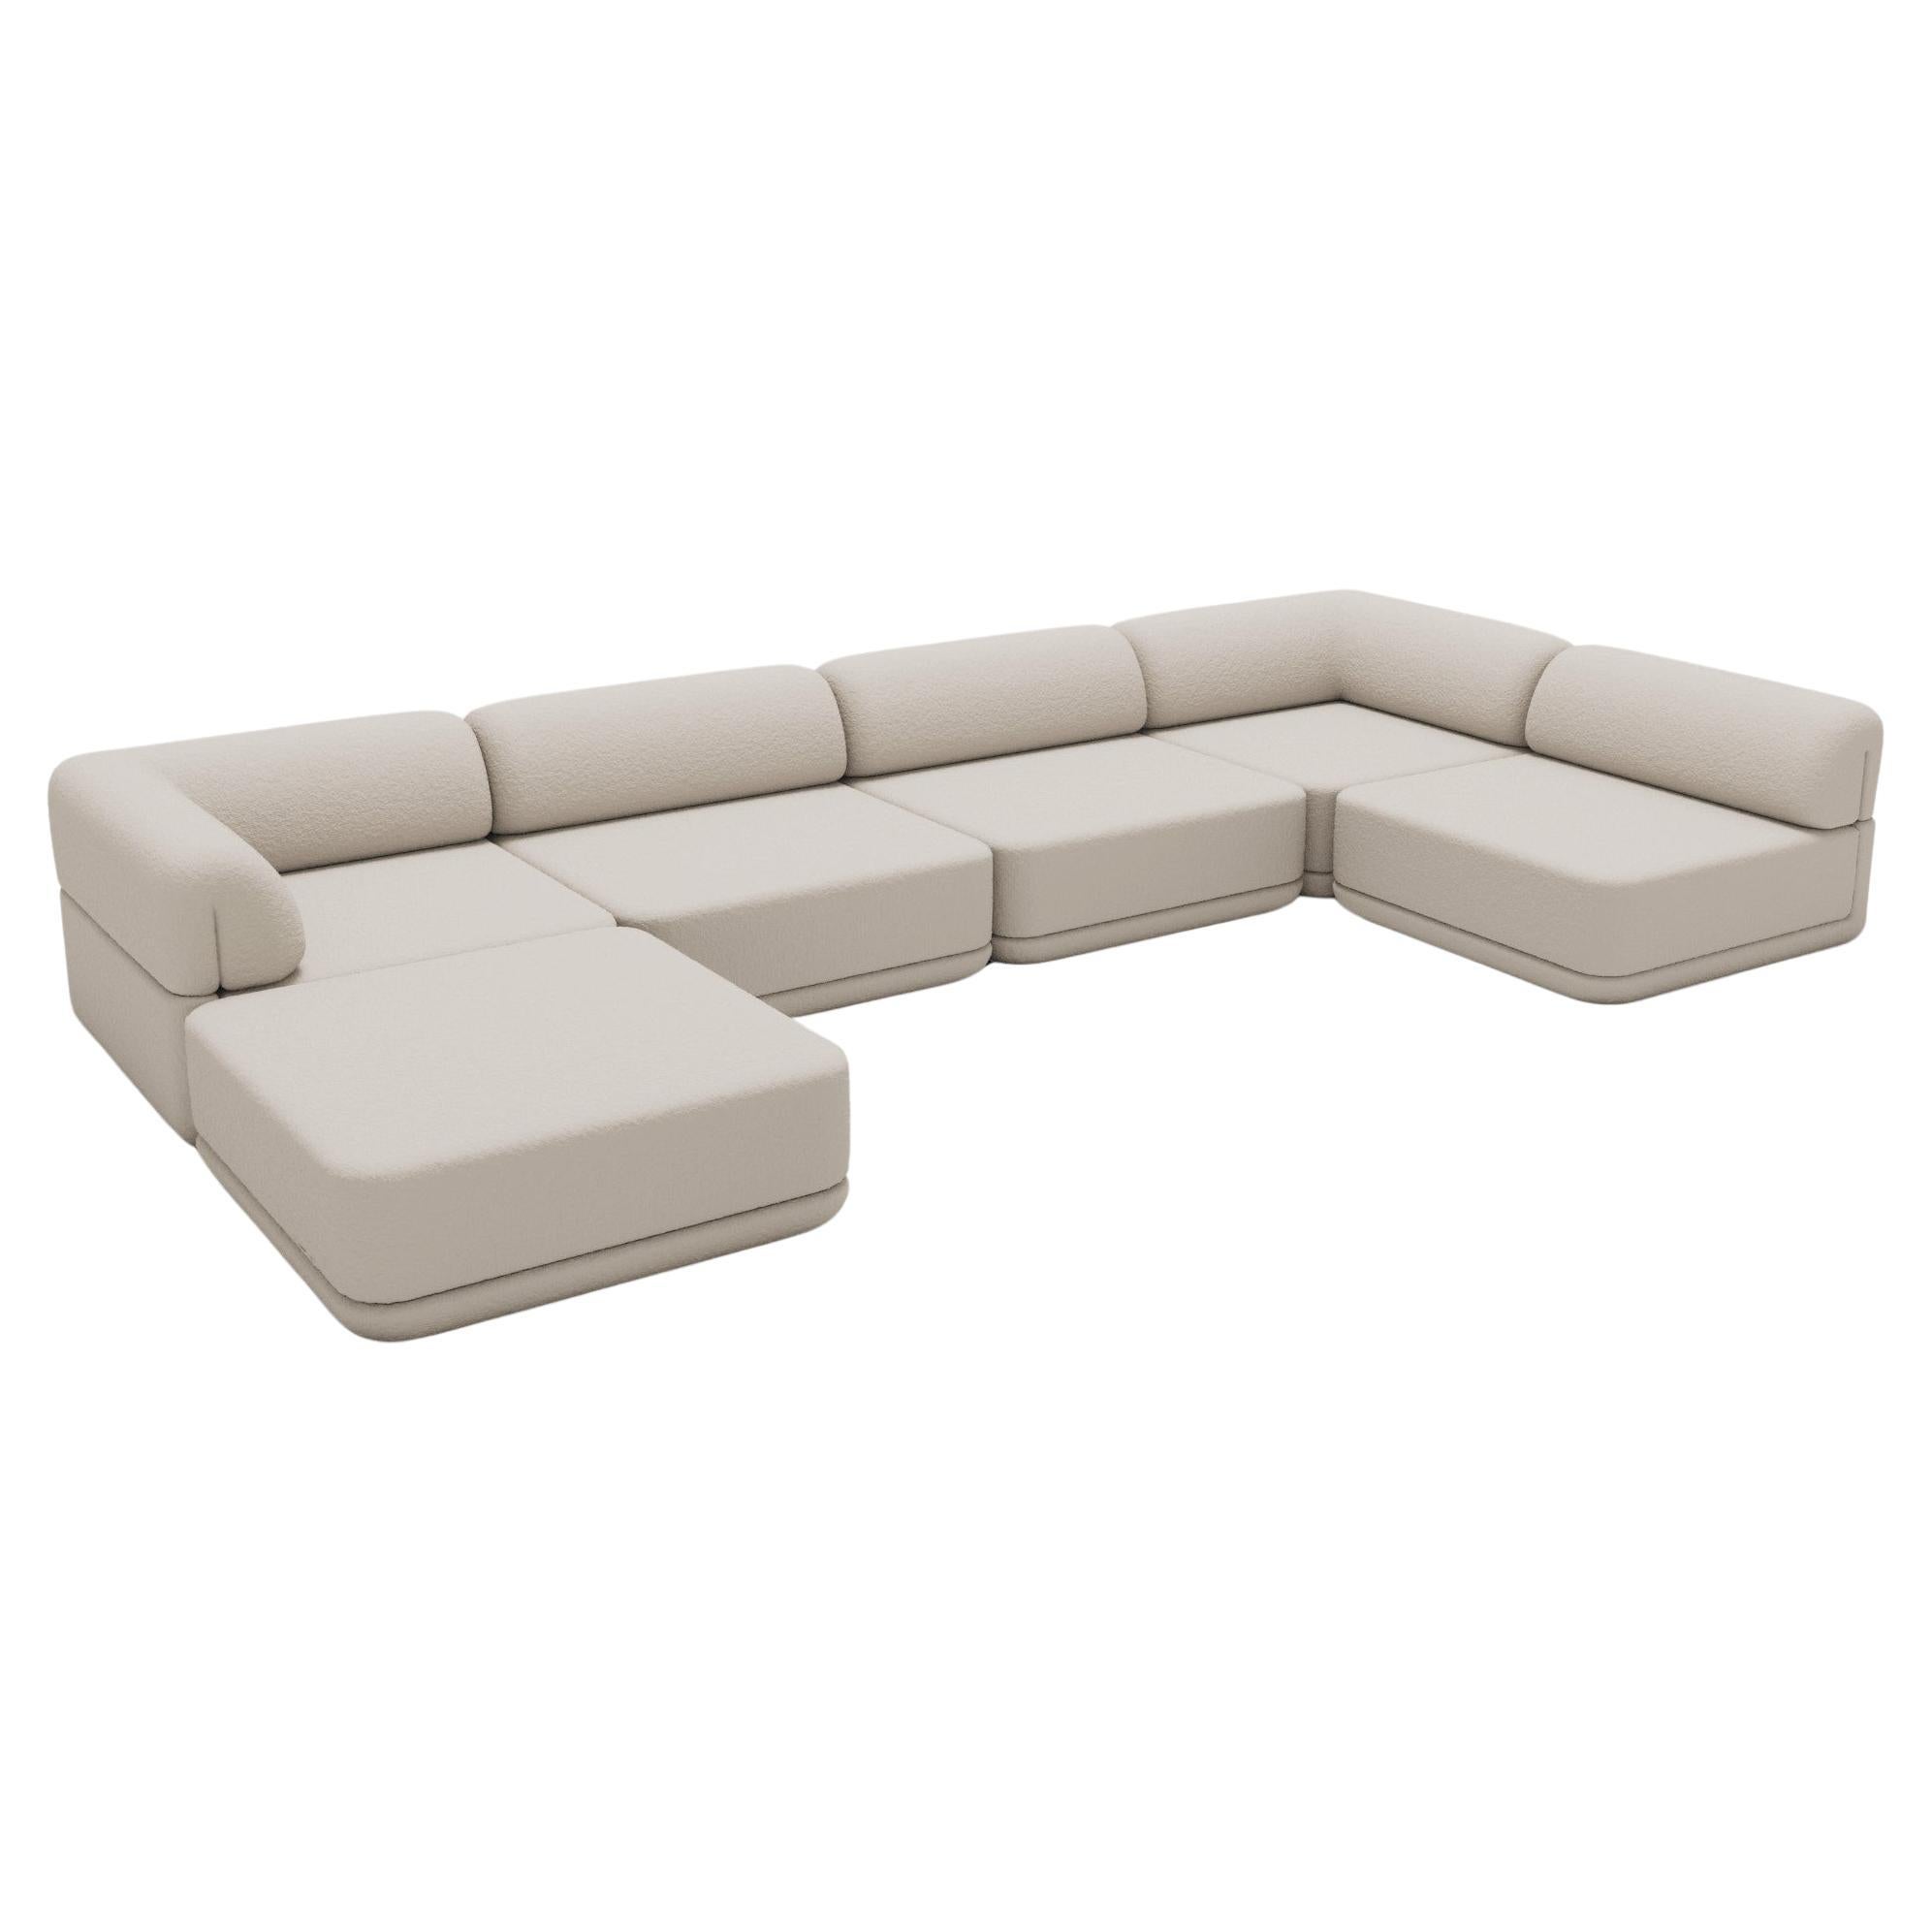 Le canapé cube - Lounge Sectional